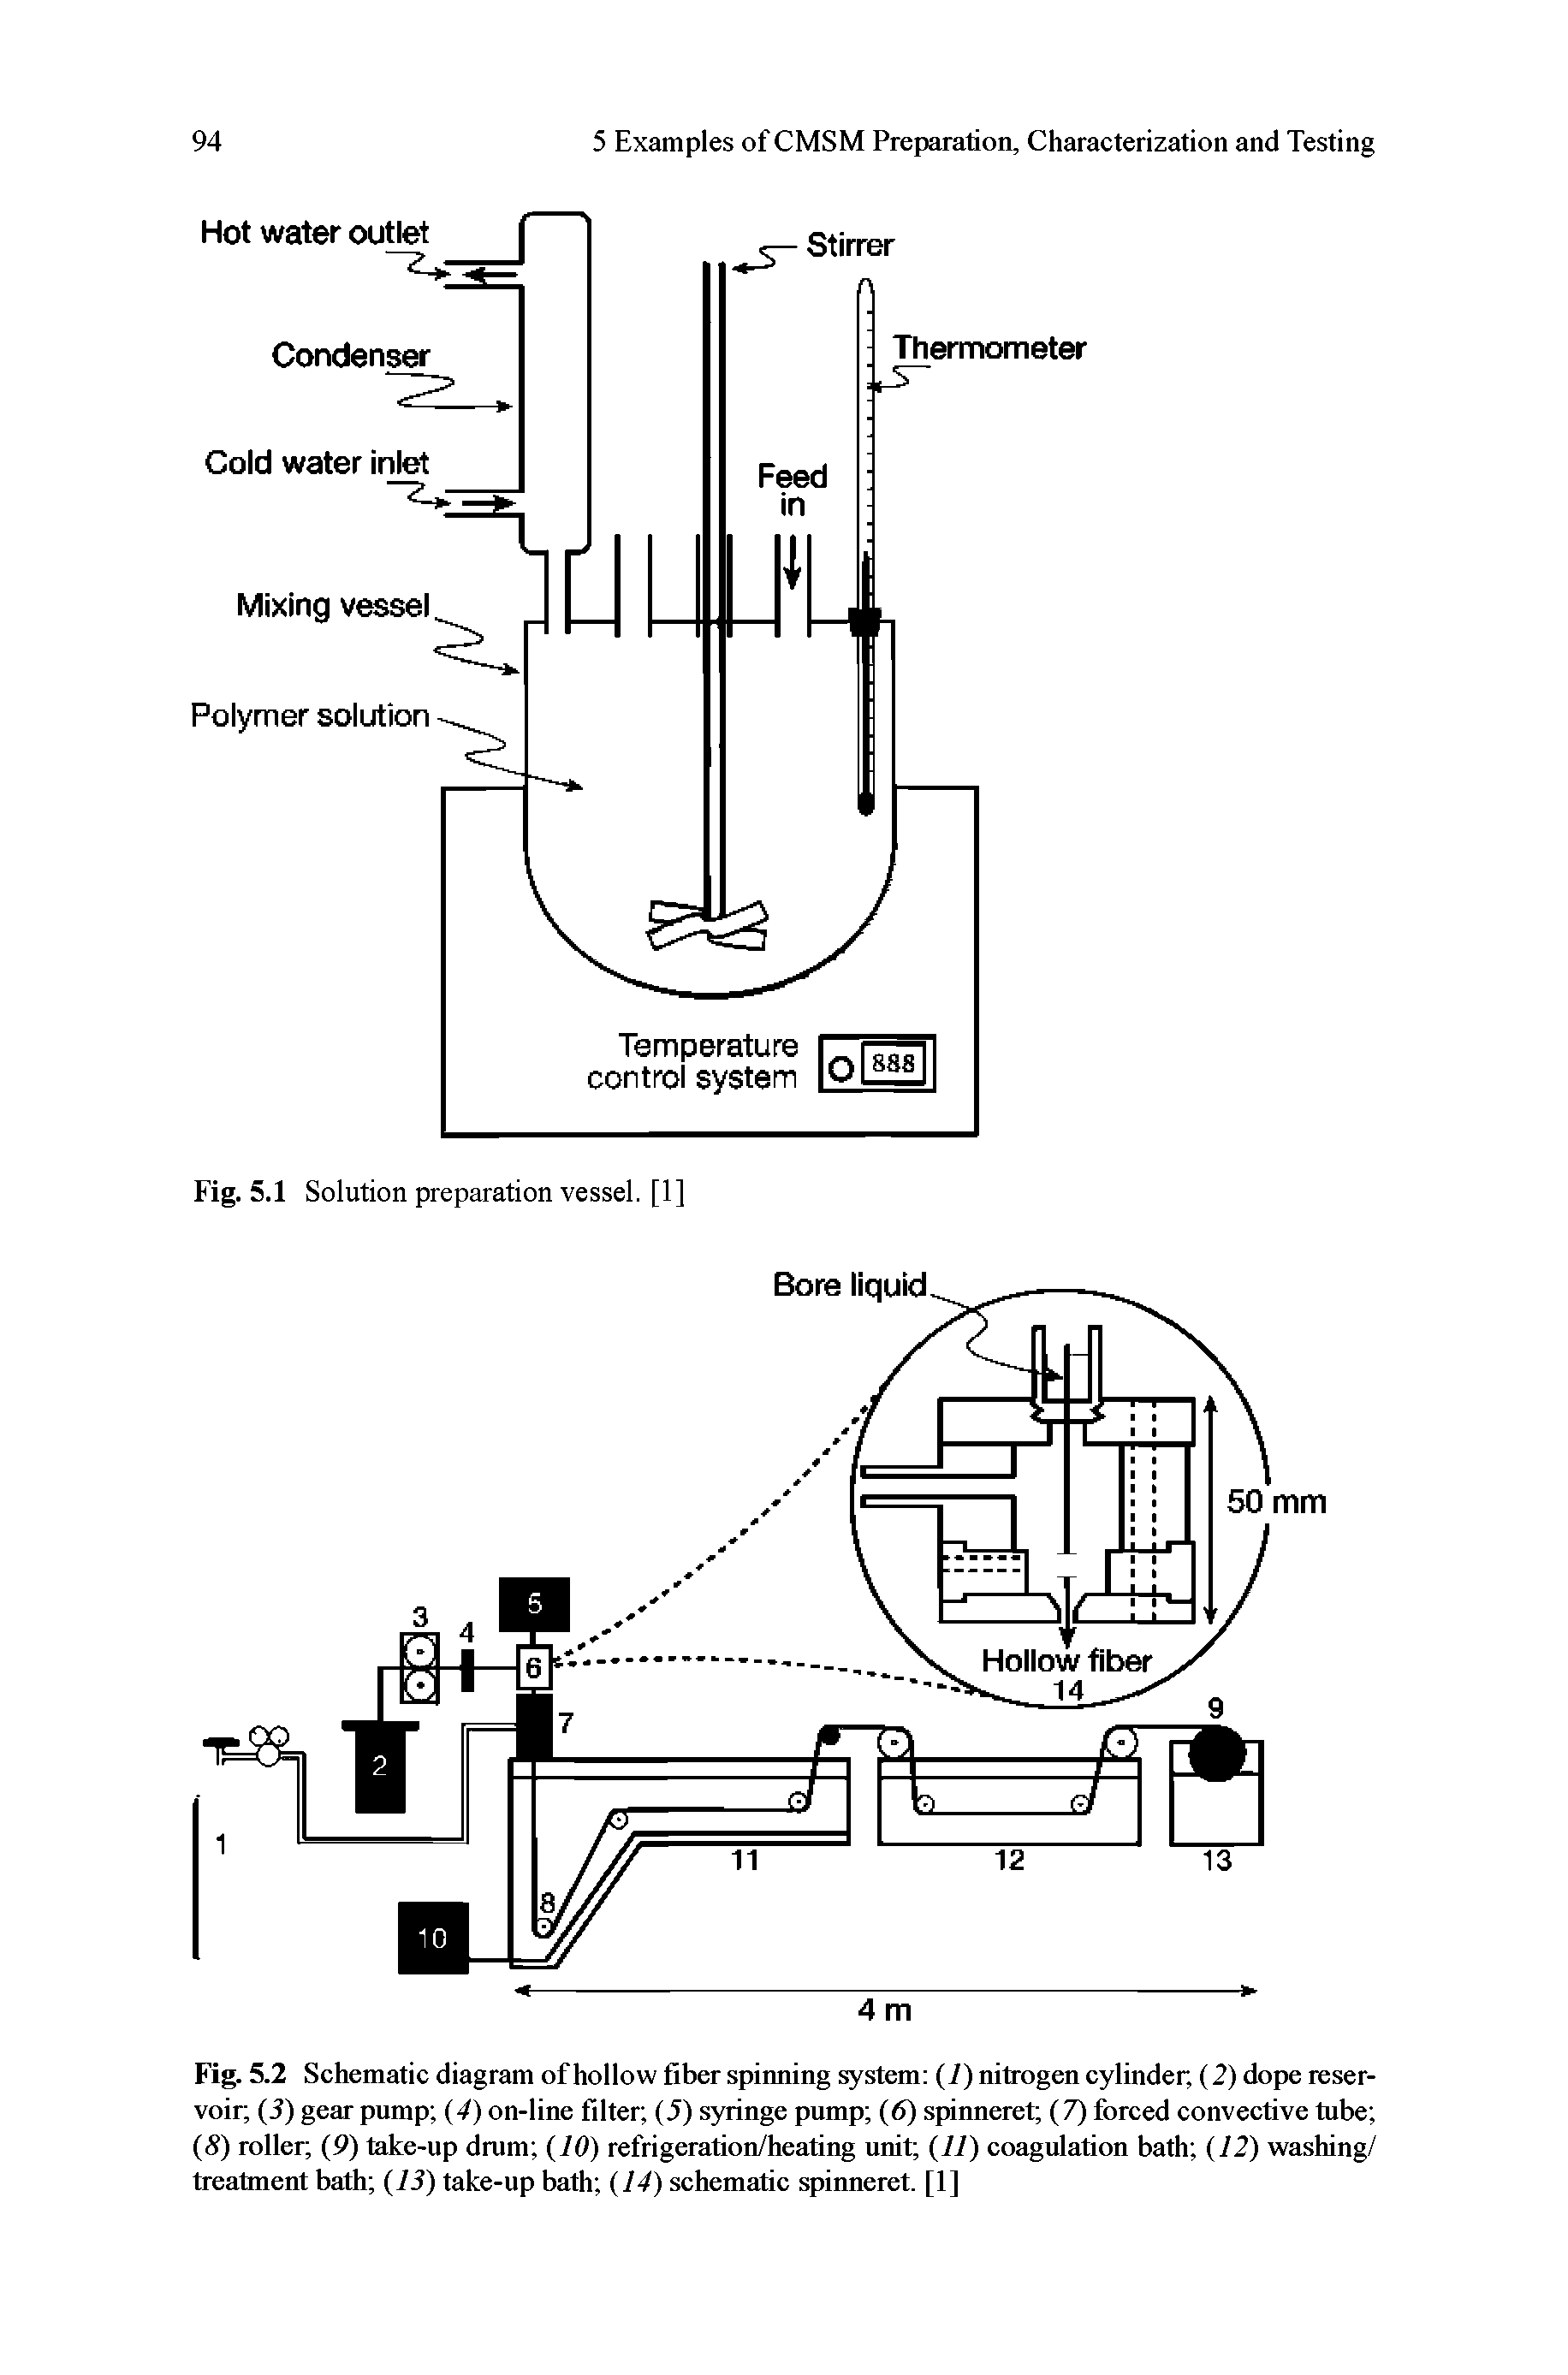 Fig. 5.2 Schematic diagram of hollow fiber spinning system (i) nitrogen cylinder, (2) dope reservoir (2) gear pump (4) on-line filter, (5) syringe pump (6) spinneret (7) forced convective tube (S) roller (9) take-up drum (10) refrigeration/heating unit (11) coagulation bath (12) washing/ treatment bath (13) take-up bath (14) schematic spinneret. [1]...